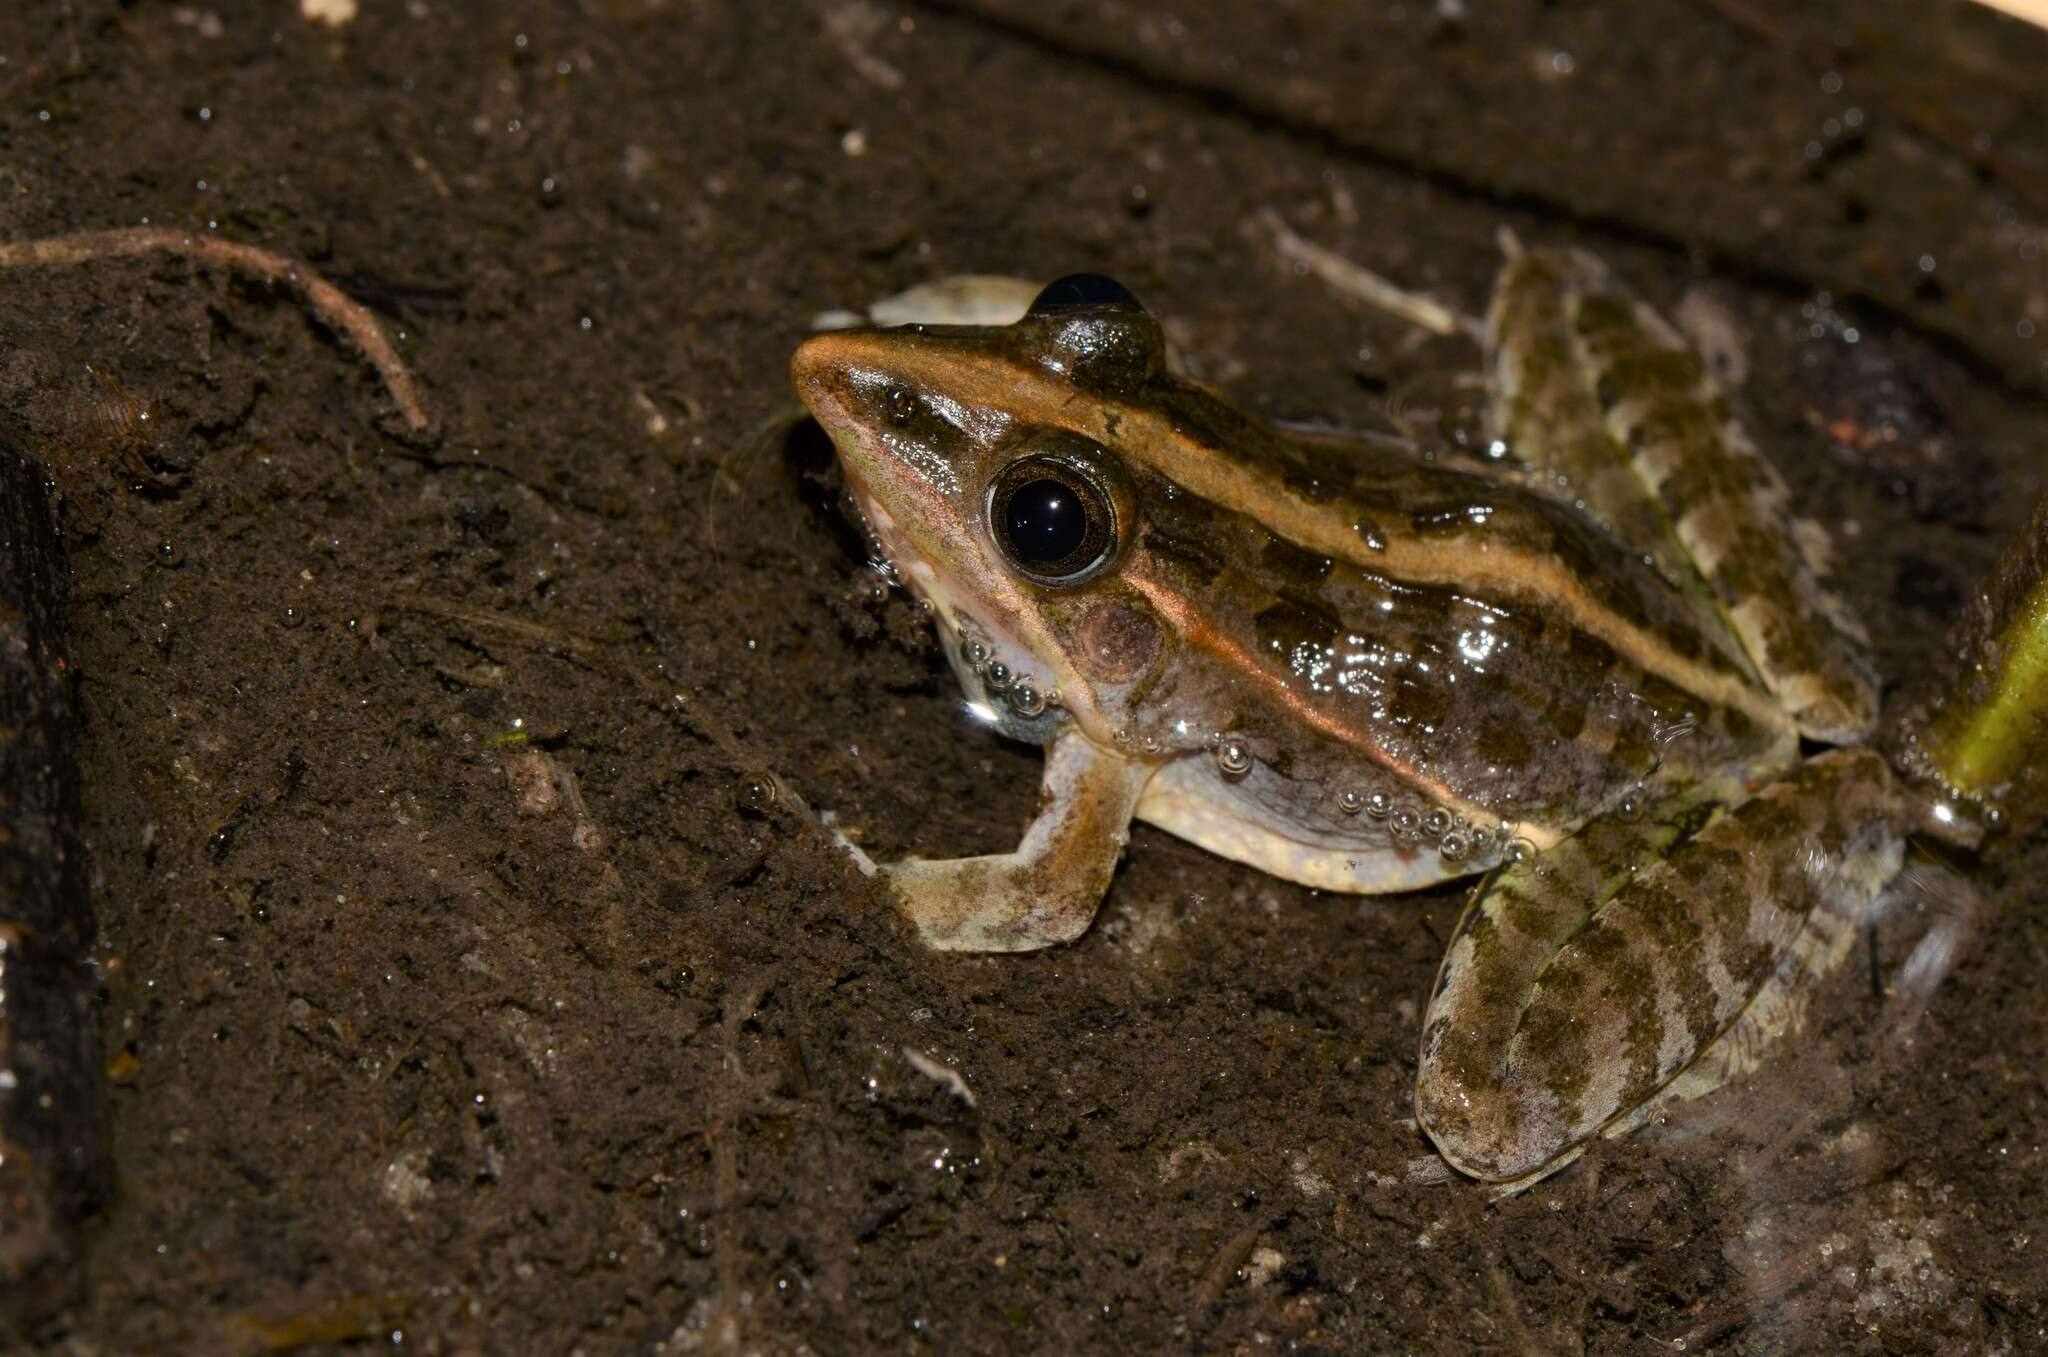 Image of Lukula grassland frog